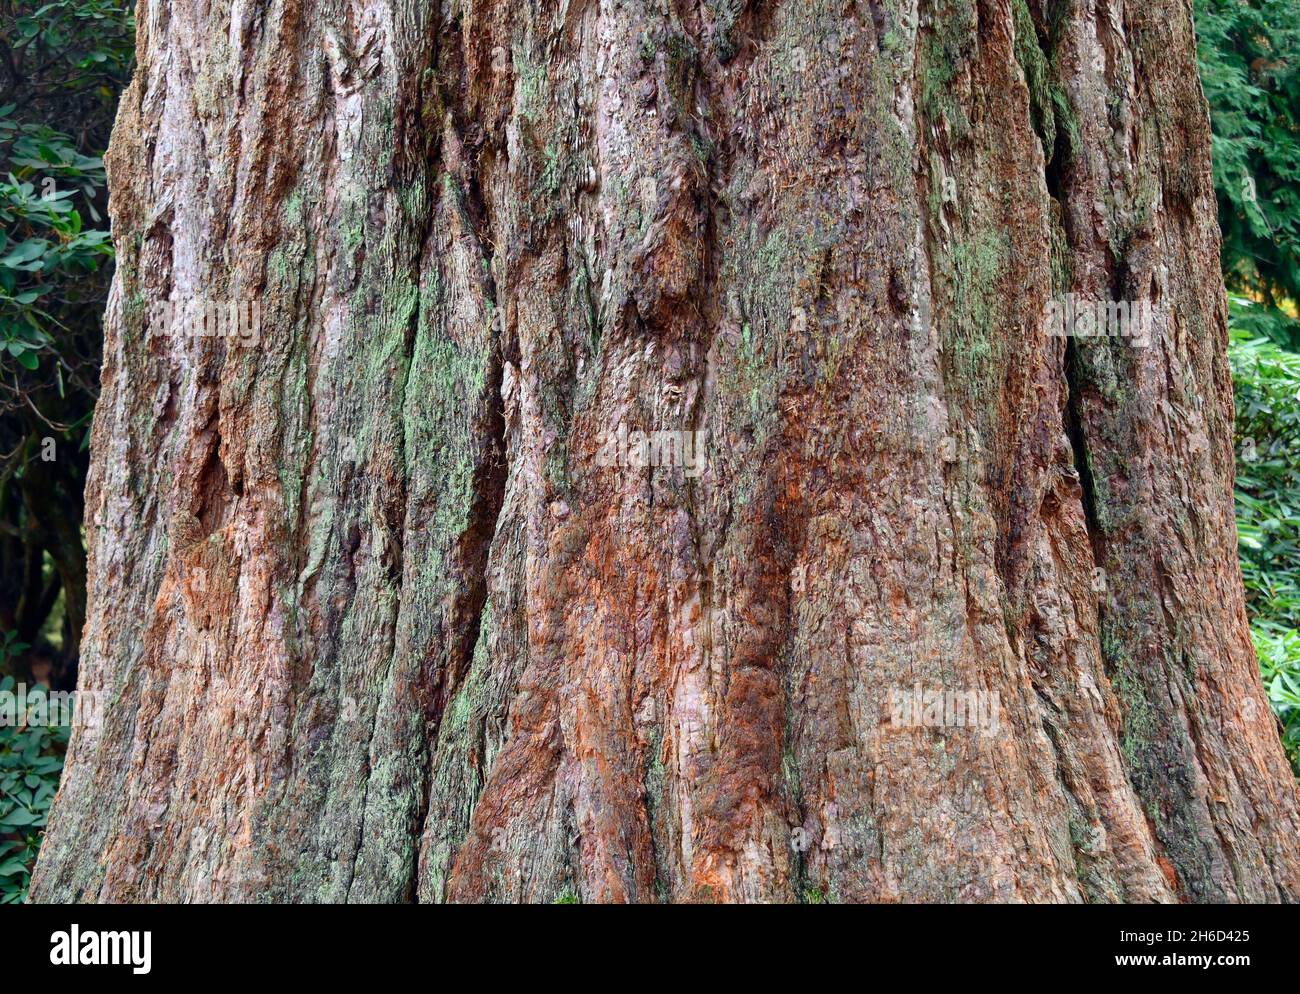 Baumrinde (Detail). Riesenmammutbaum (Sequoiadendron giganteum). Dawyck Botanic Gardens, Stobo, Scottish Borders, Schottland, Vereinigtes Königreich, Europa. Stockfoto